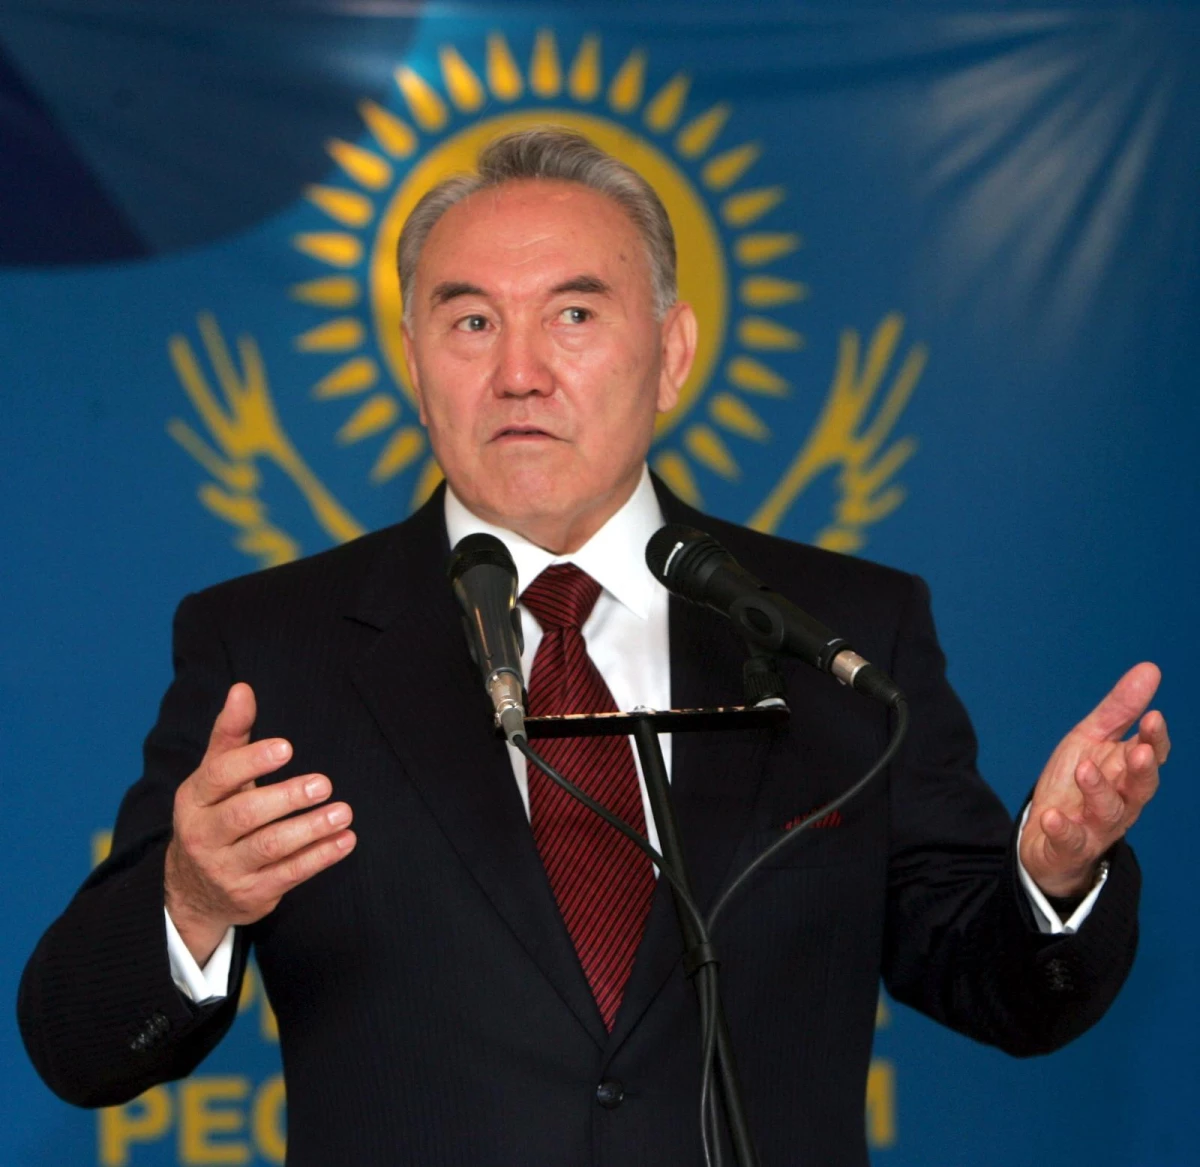 Ülkeden kaçtığı iddia edilen Nazarbayev: "Hiçbir yere gitmedim"